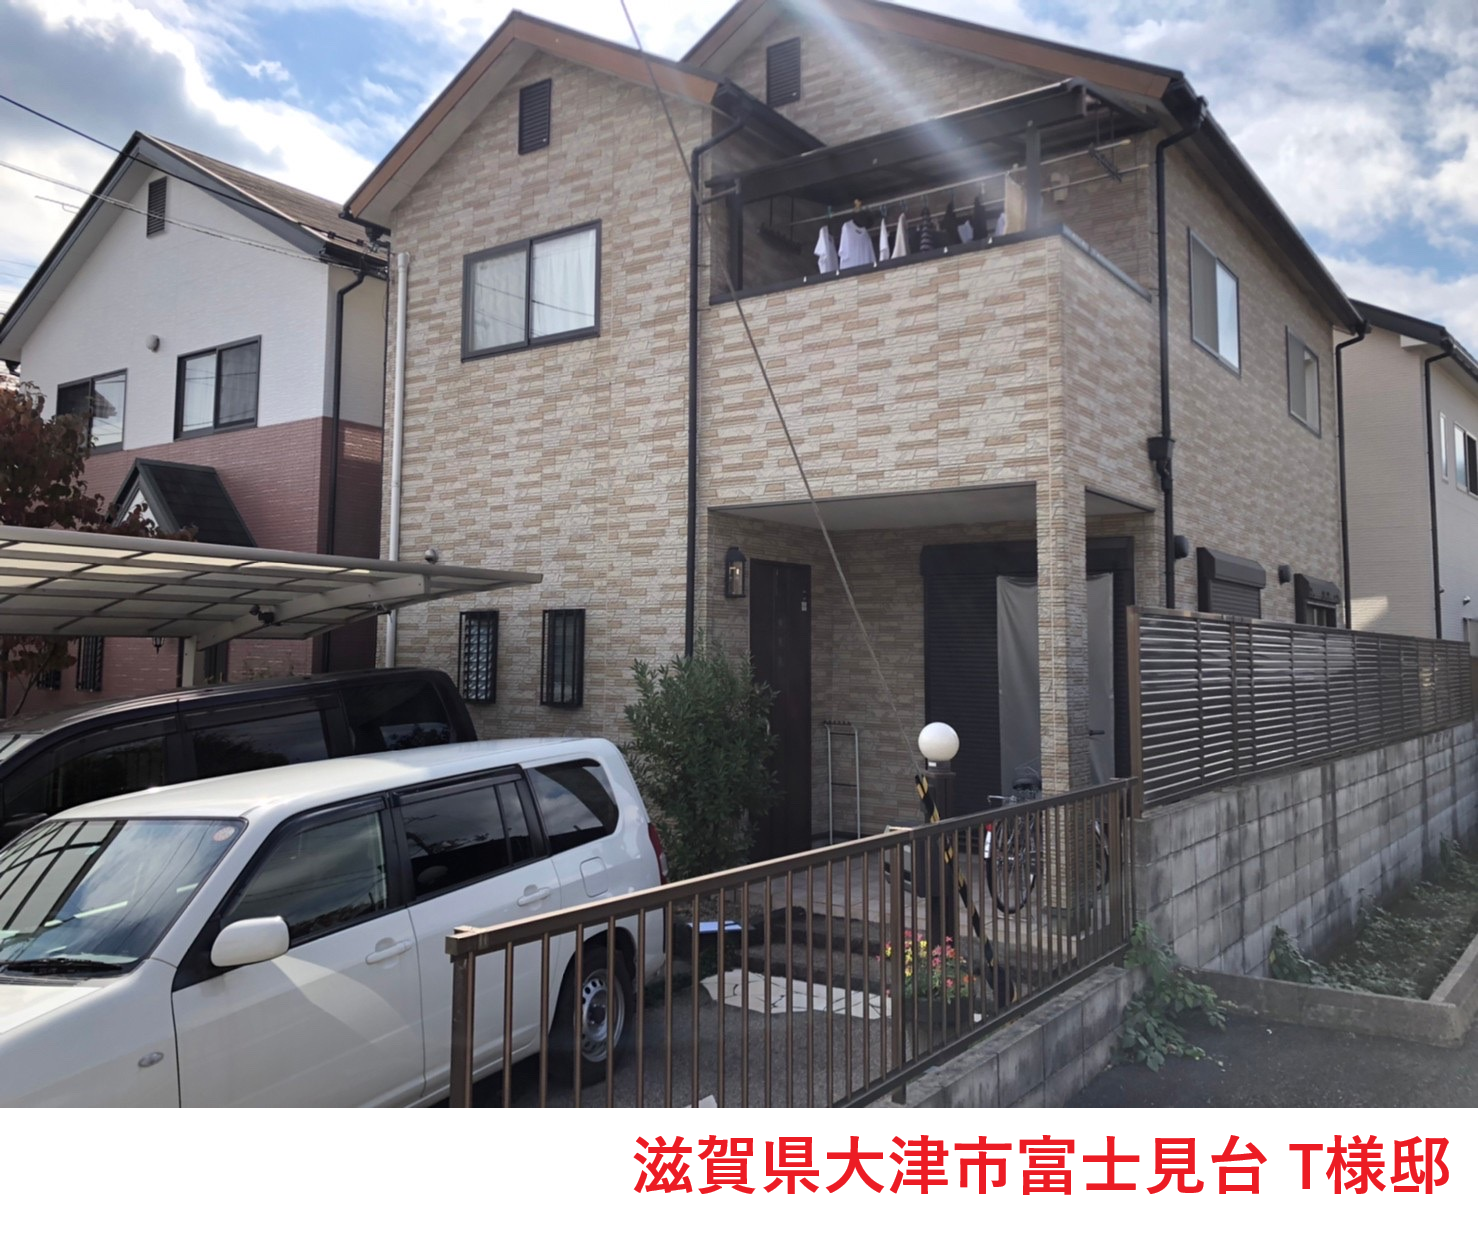 滋賀県大津市富士見台で屋根の劣化が心配でお問い合わせ。屋根調査